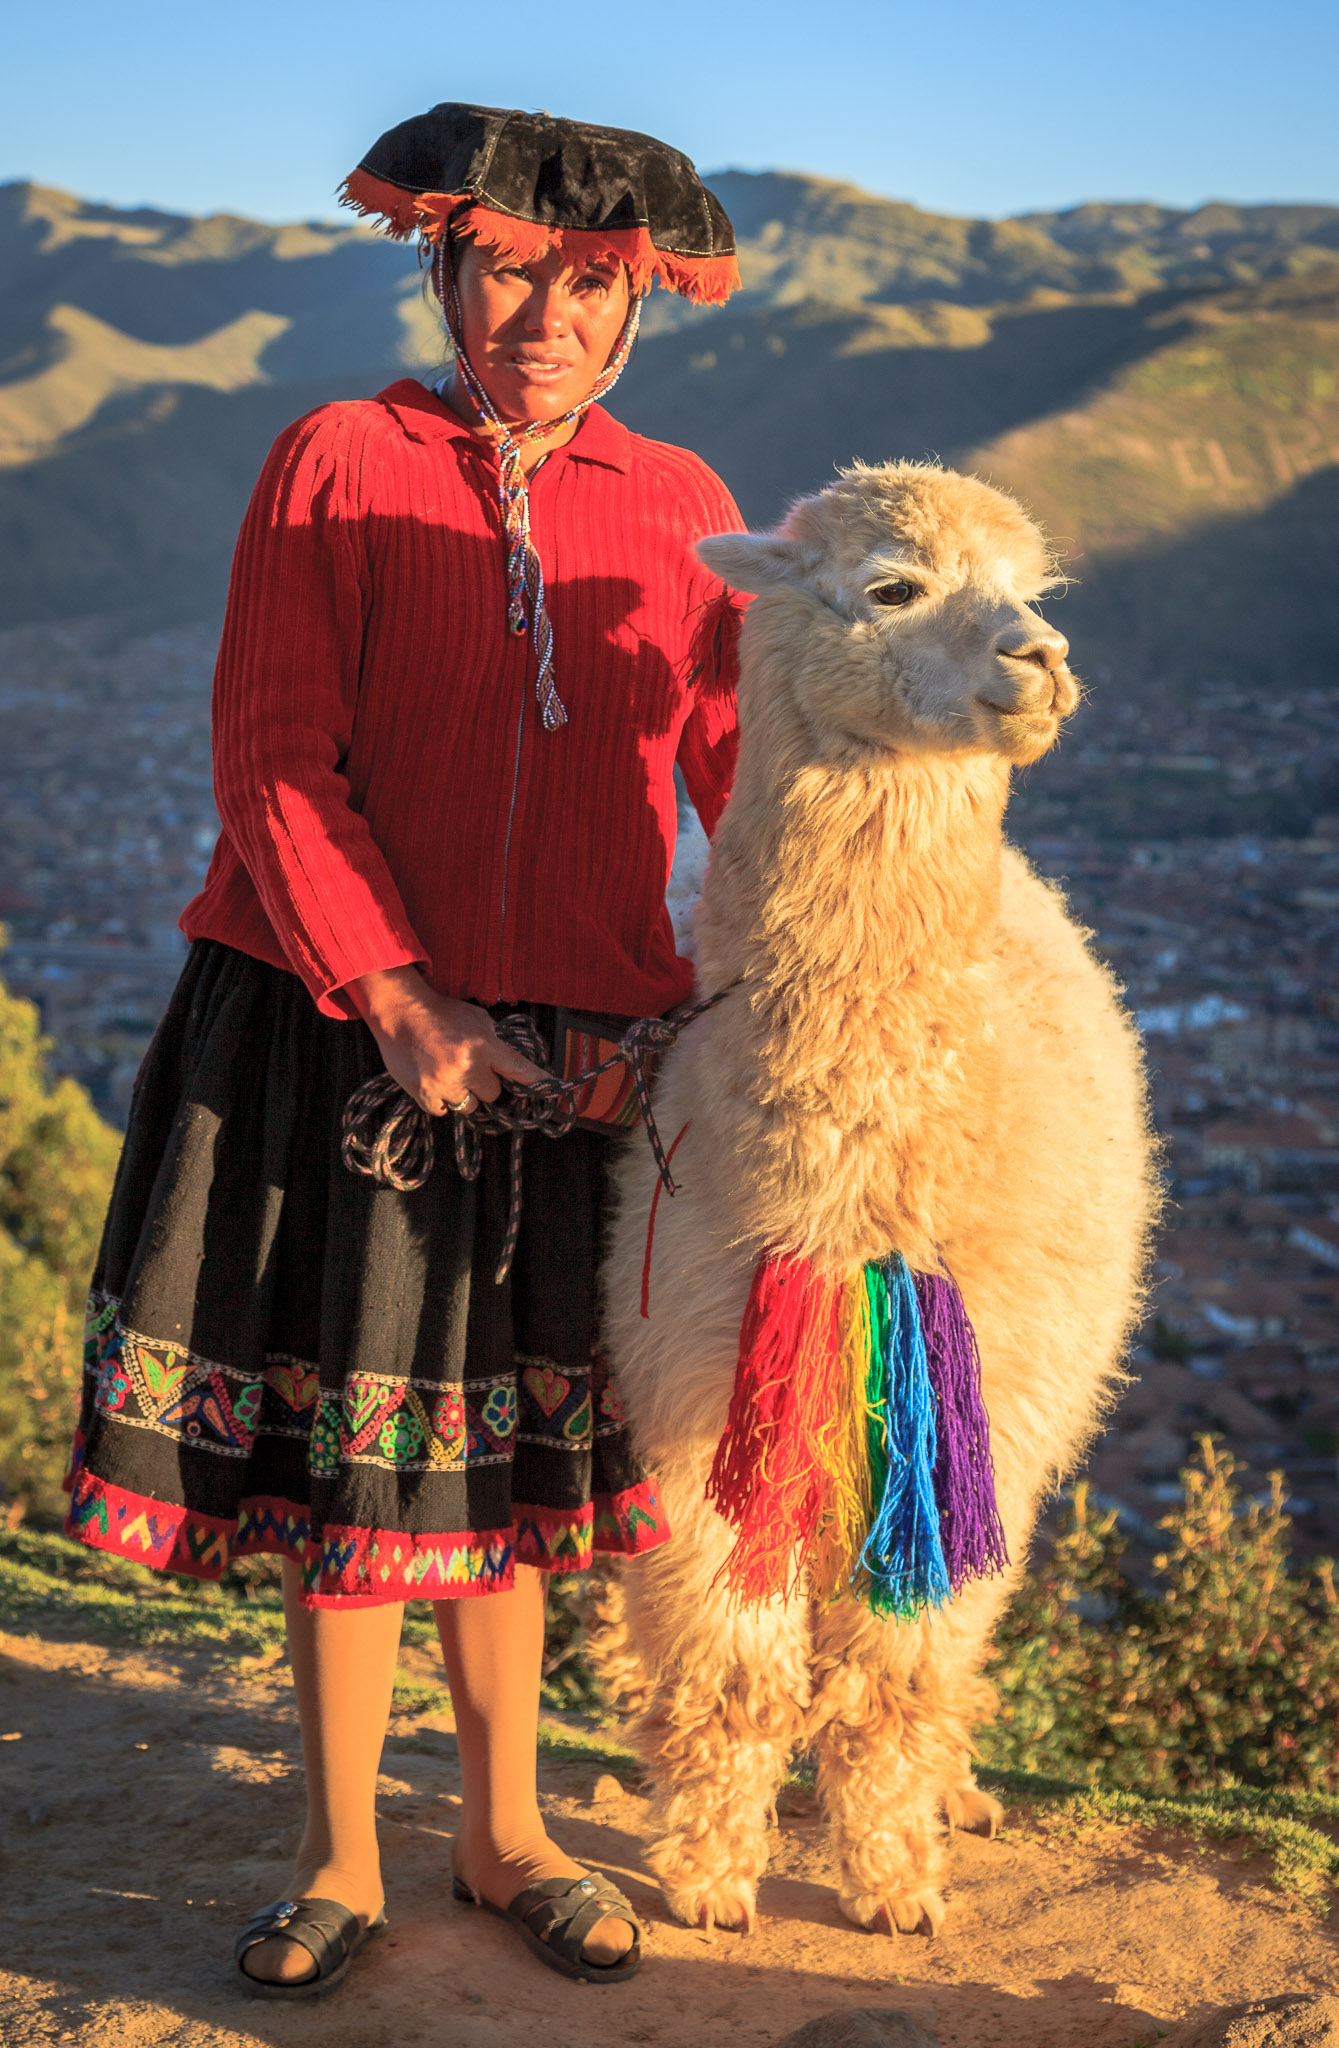 Local sight outside Cusco